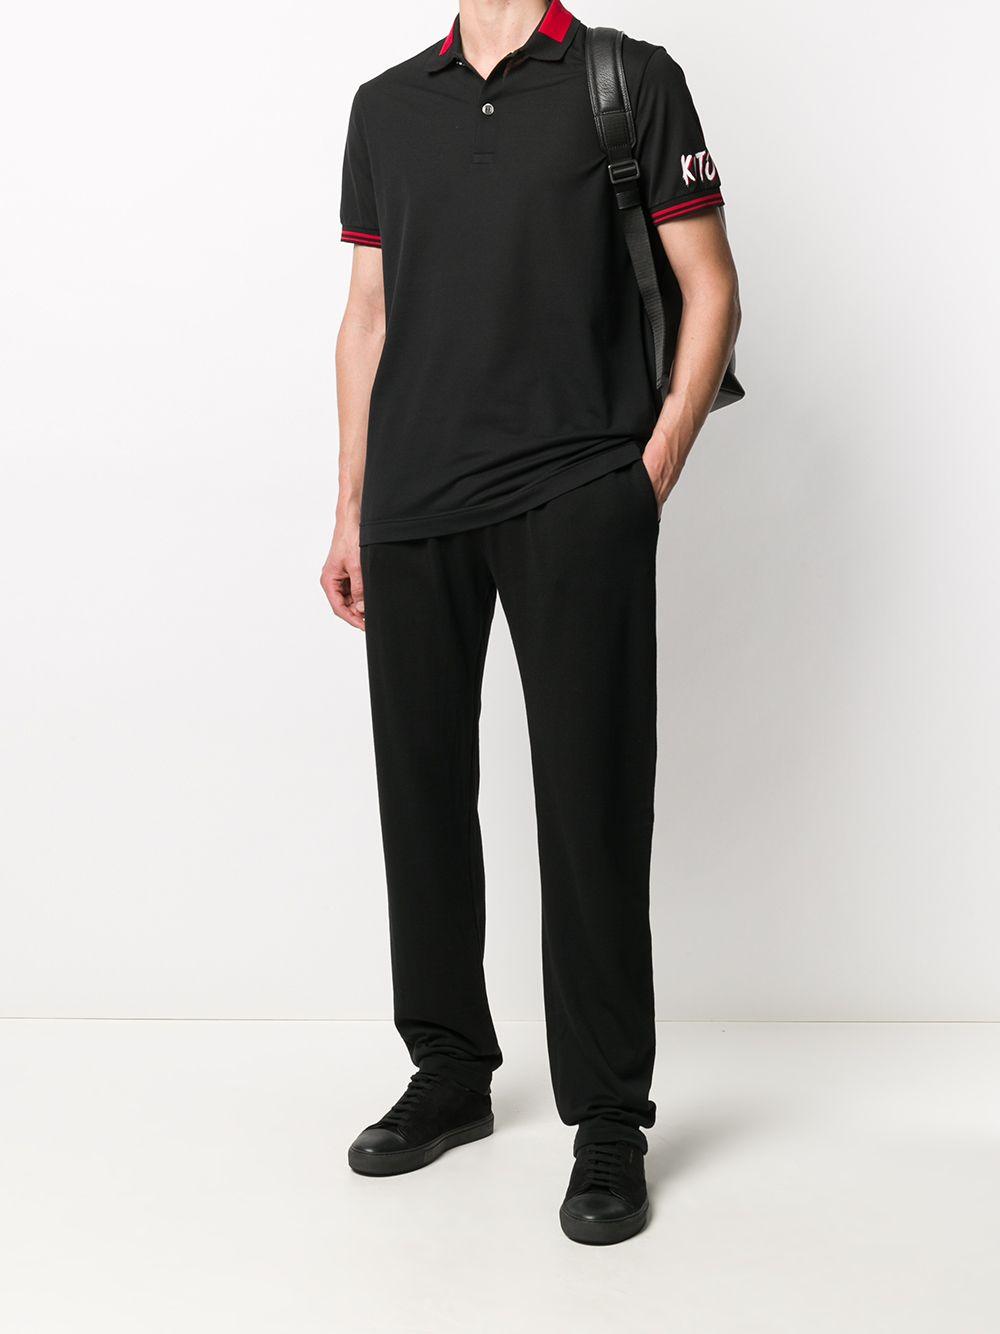 Kiton Cotton Logo-print Polo Shirt in Black for Men - Lyst